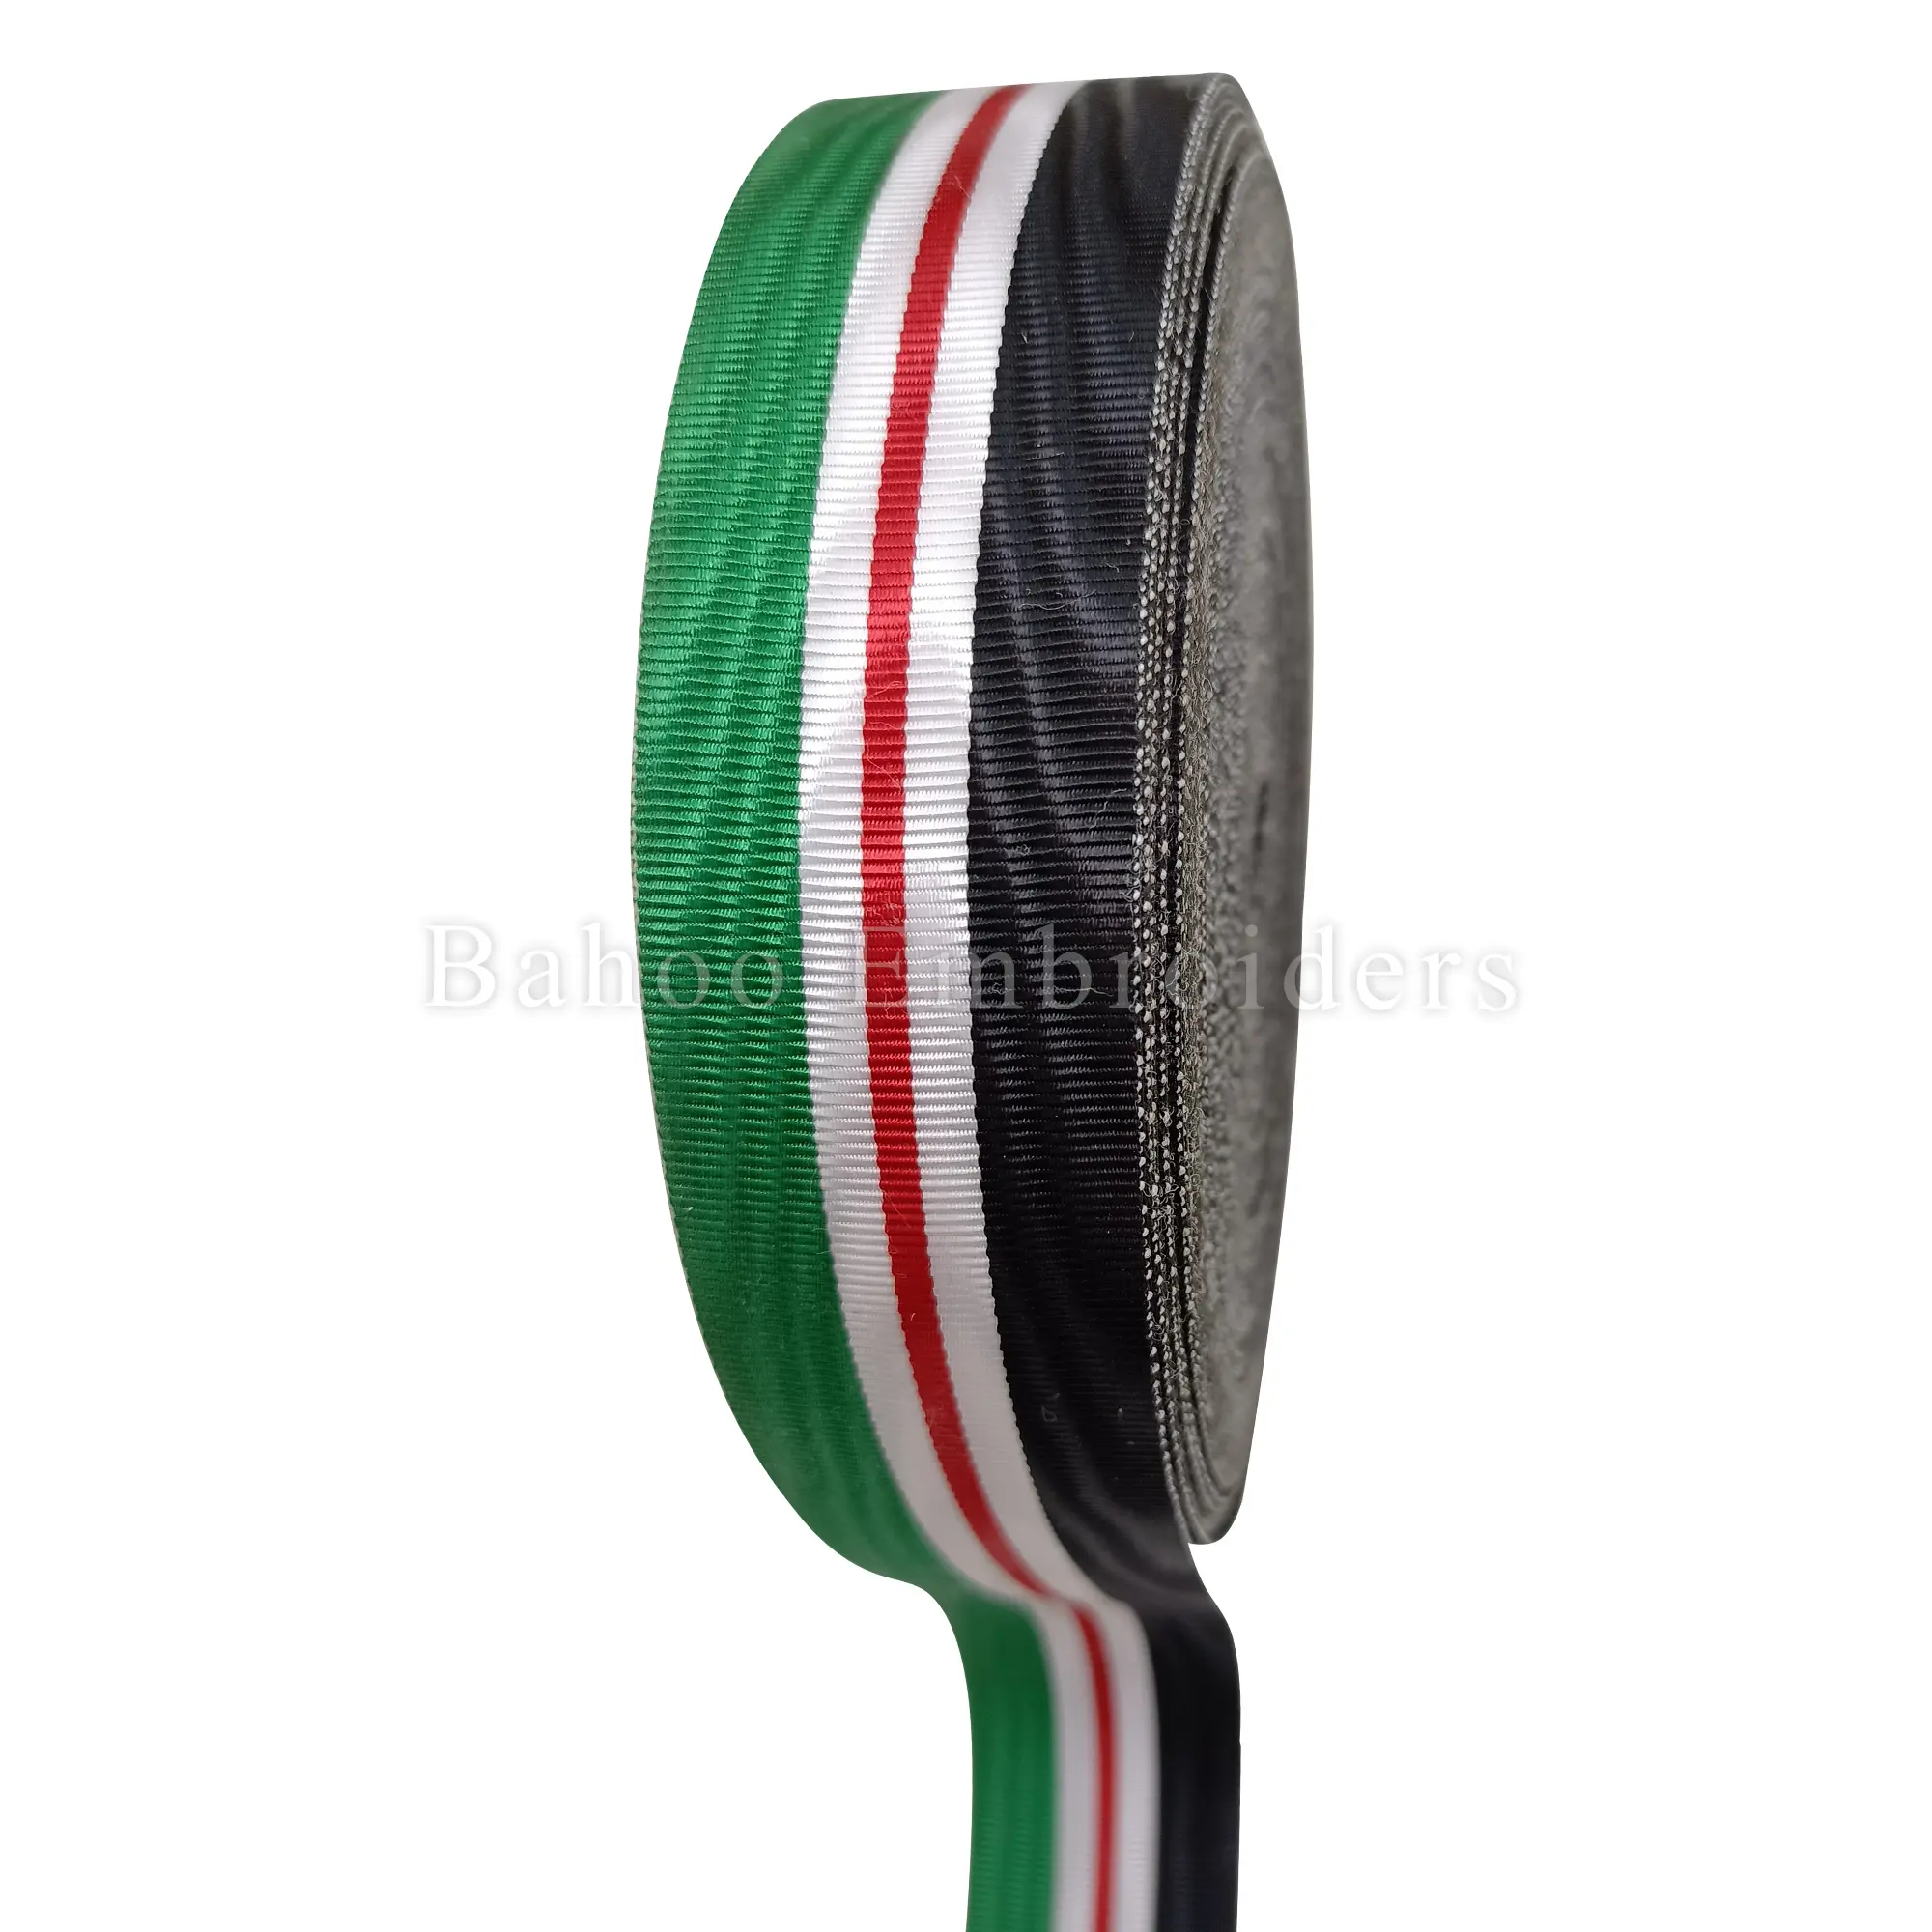 Cintas de medalla, barras de cinta, cortinas de cinta (rollo) (verde claro + blanco + rojo + negro)